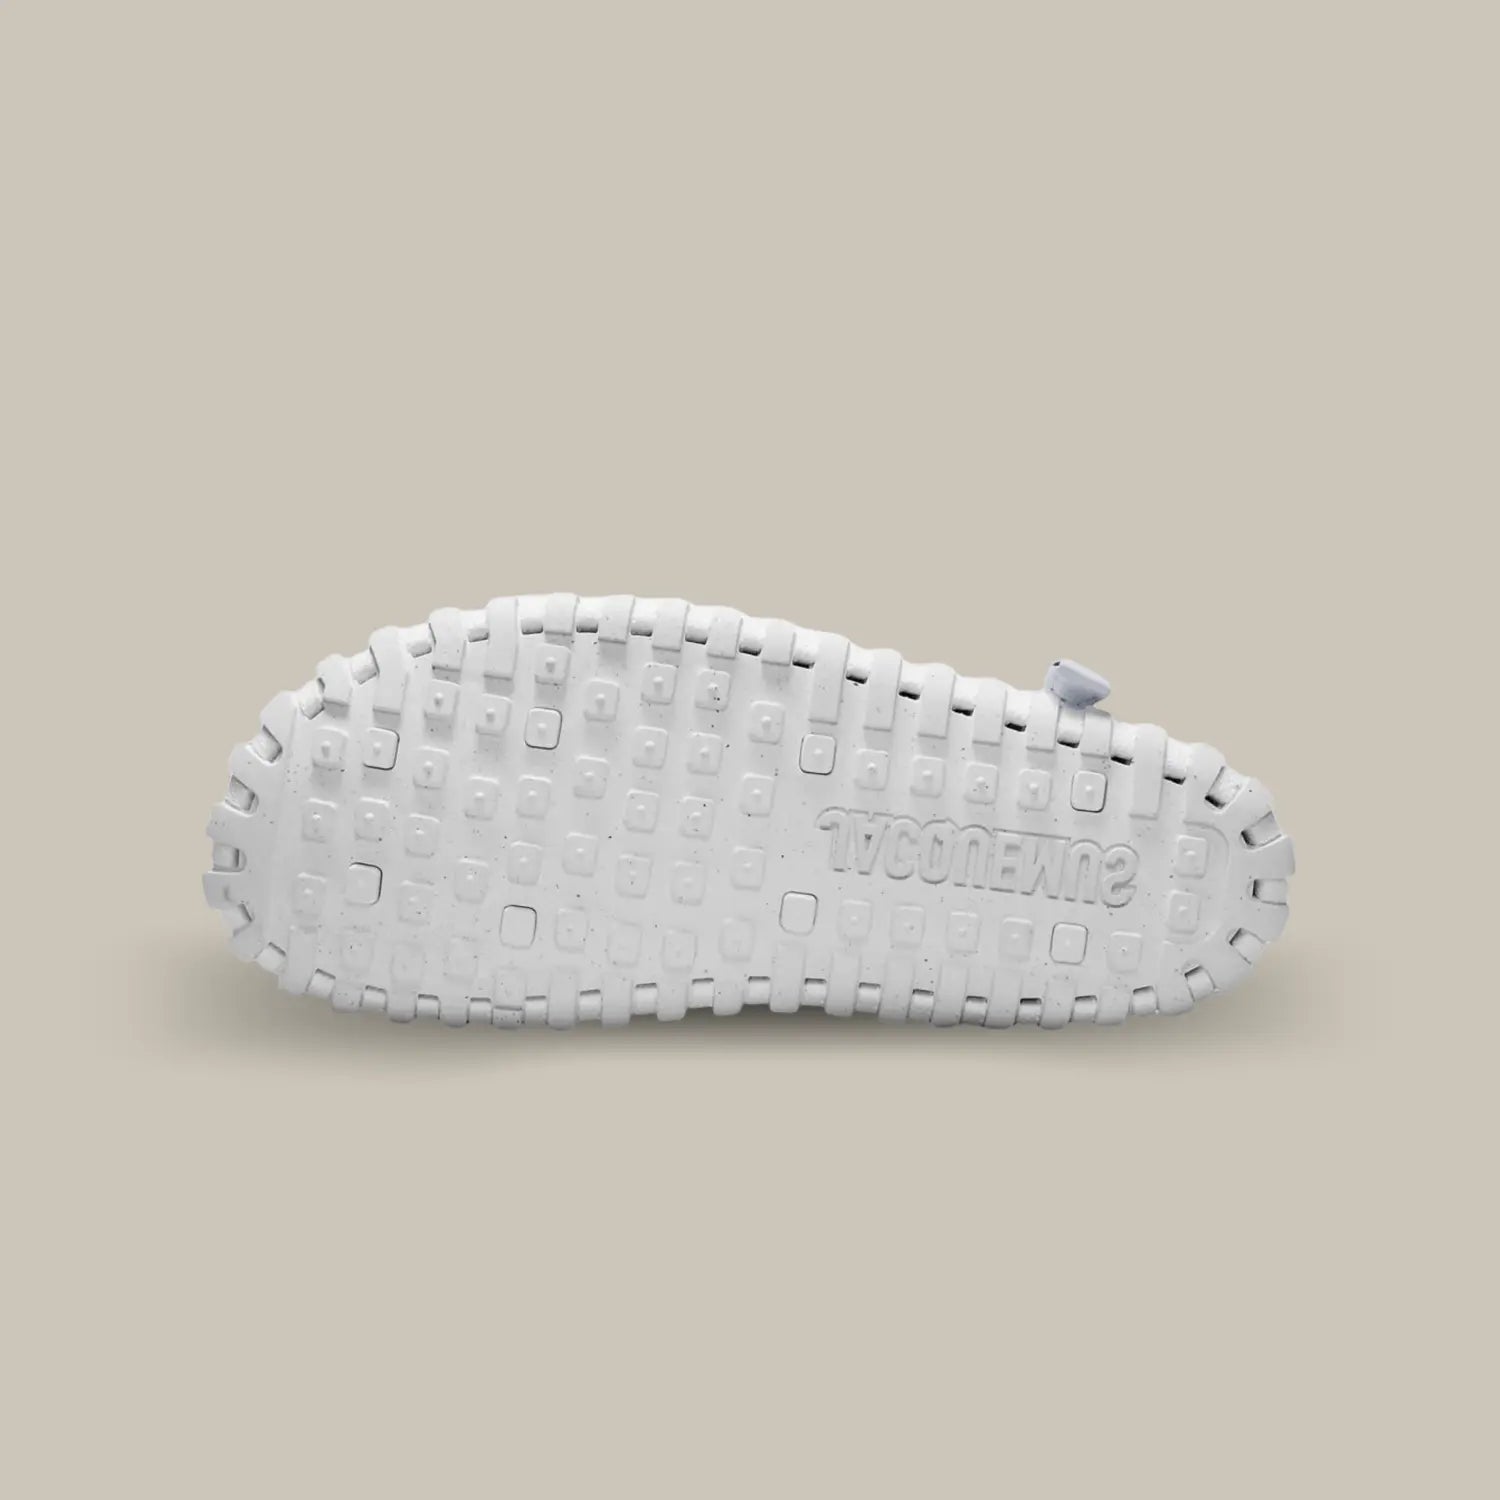 La semelle de la Nike J Force 1 Low Jacquemus White de couleur blanche.